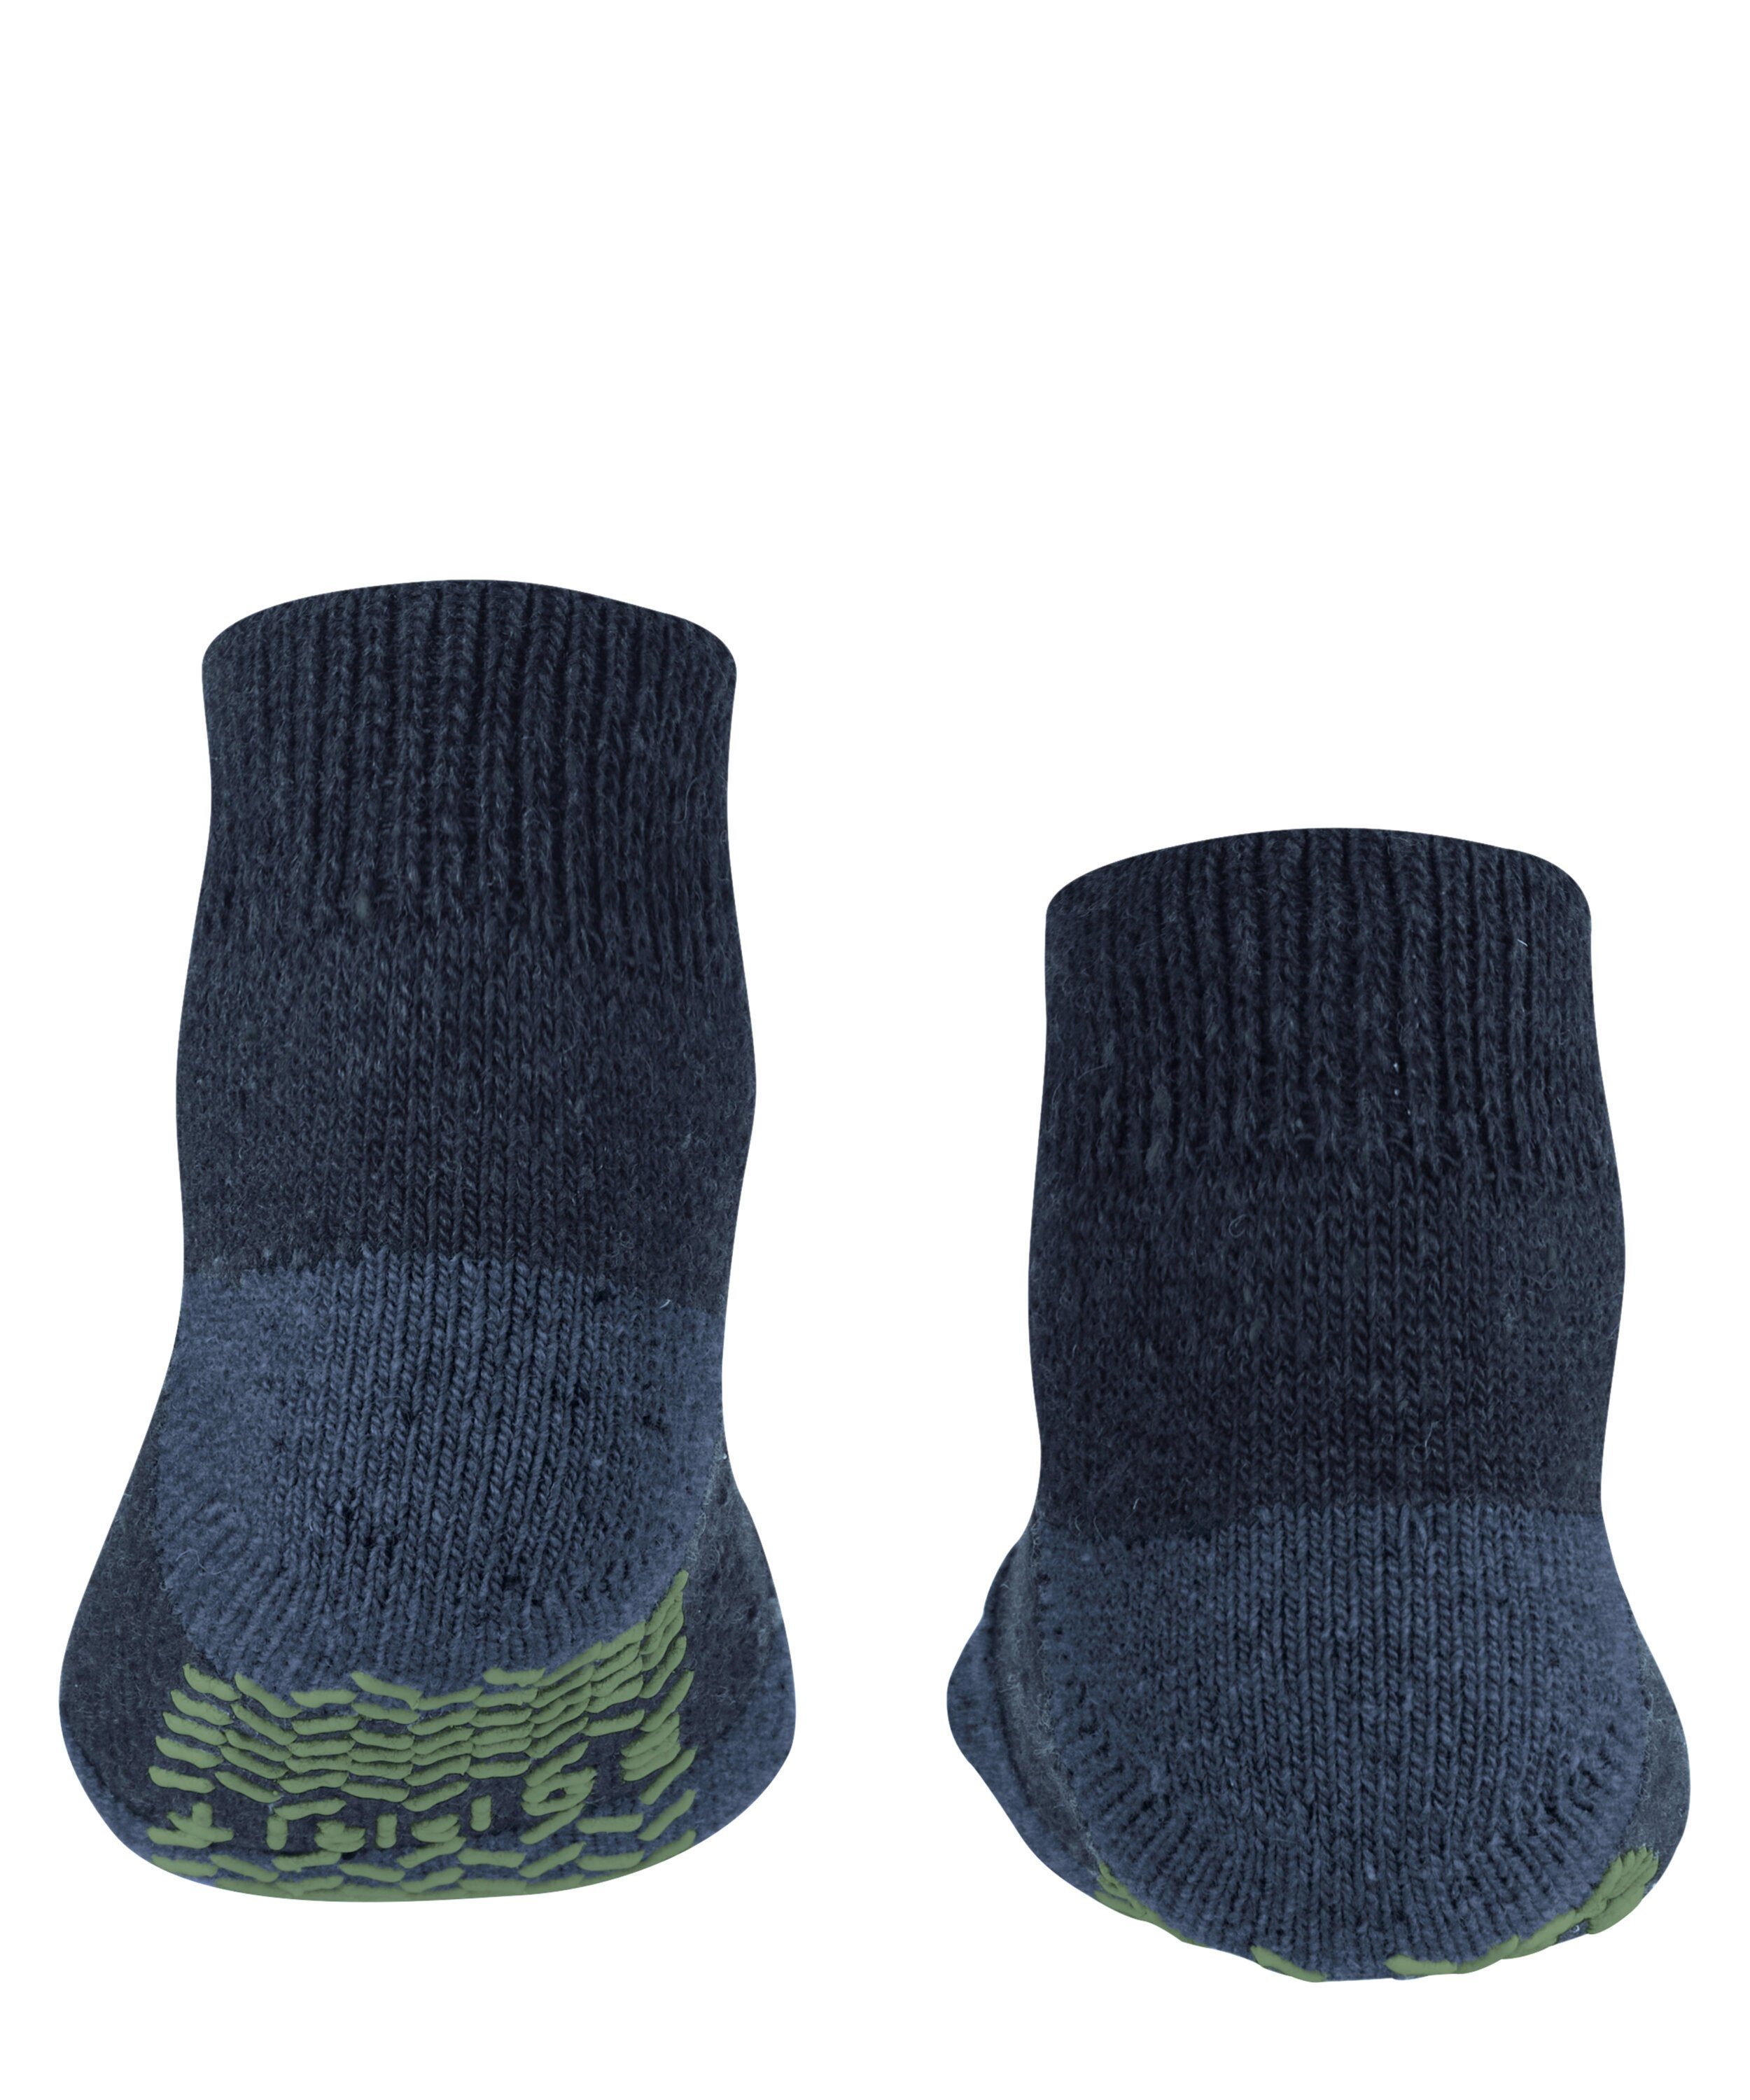 (6120) (1-Paar) Esprit Socken marine Effect